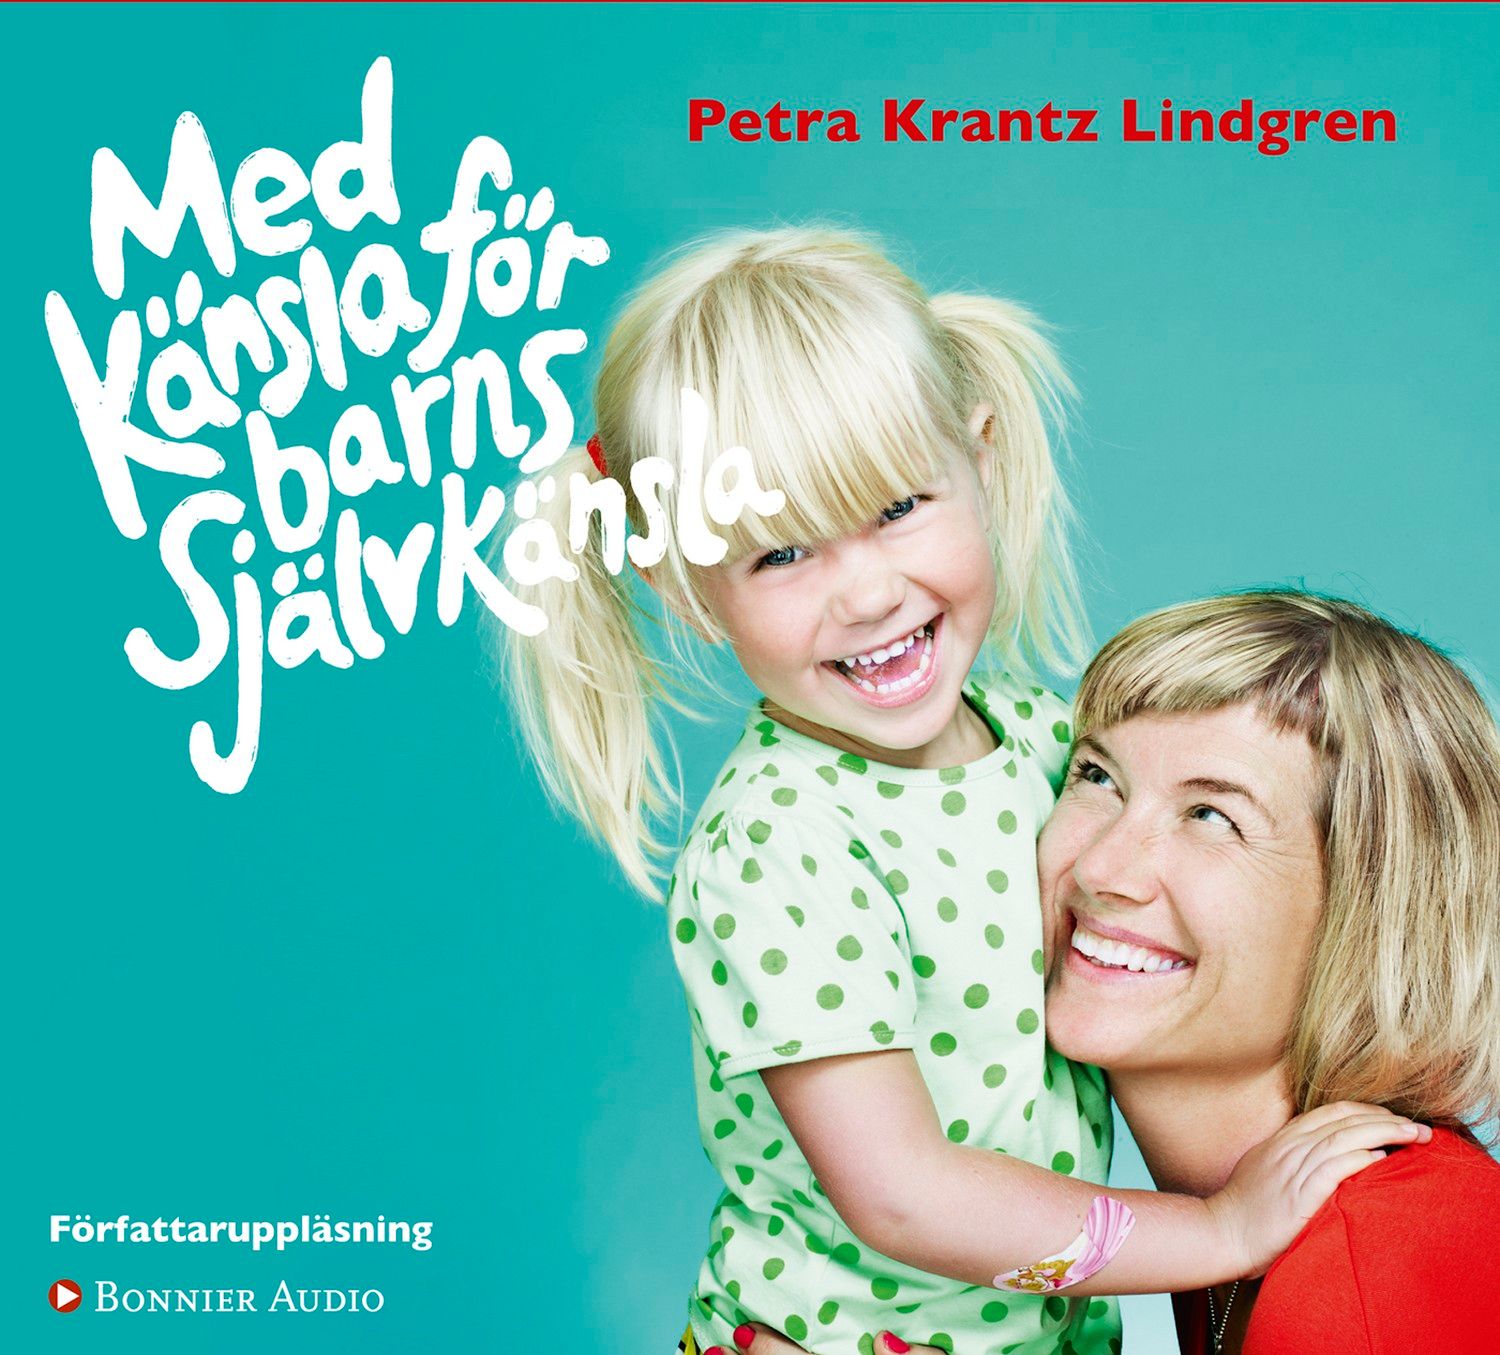 Med känsla för barns självkänsla, audiobook by Petra Krantz Lindgren